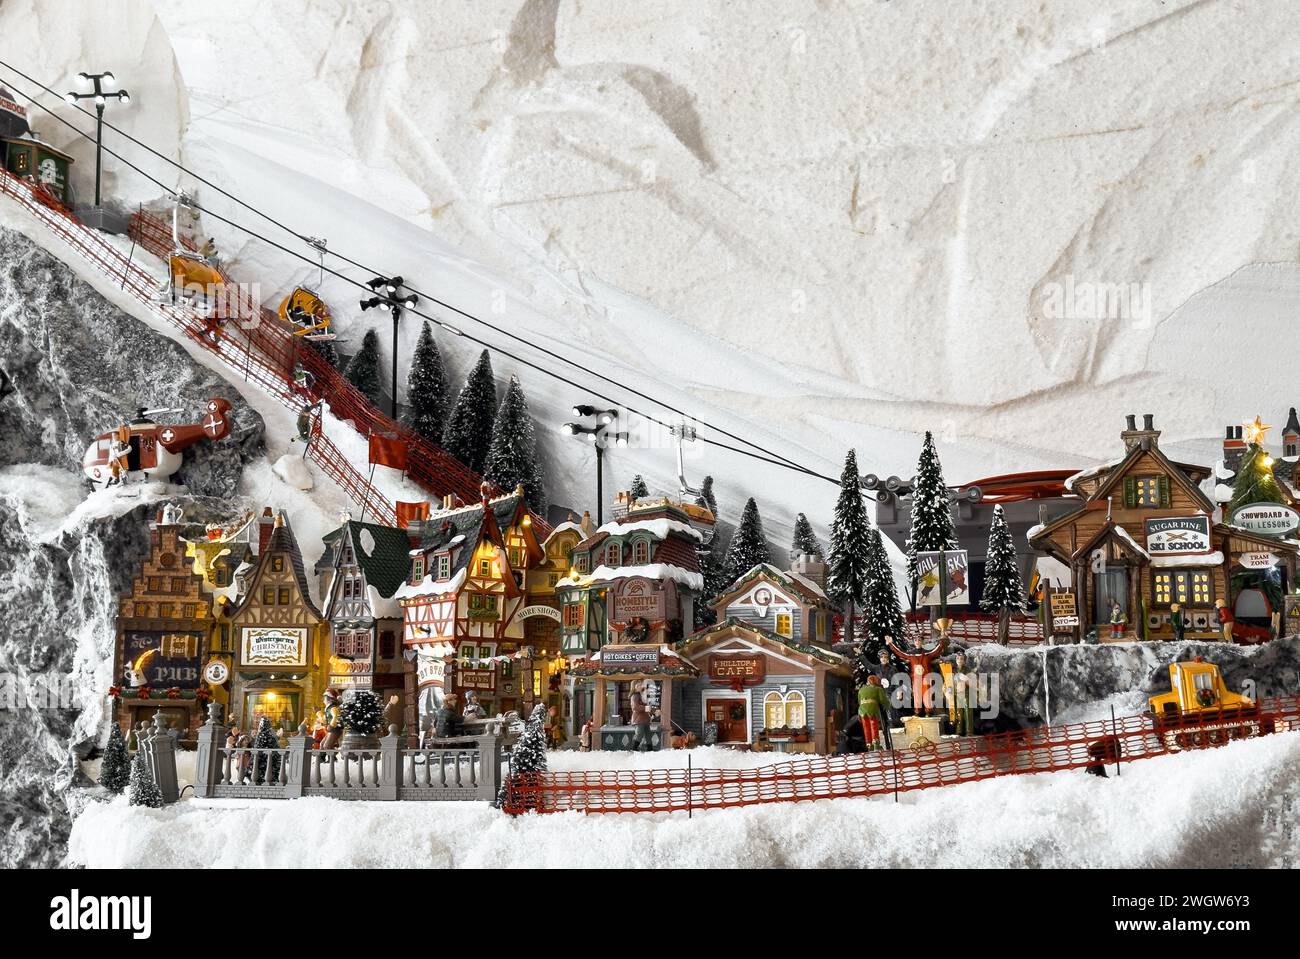 Station de ski, ville jouet miniature, ville en vacances d'hiver Banque D'Images